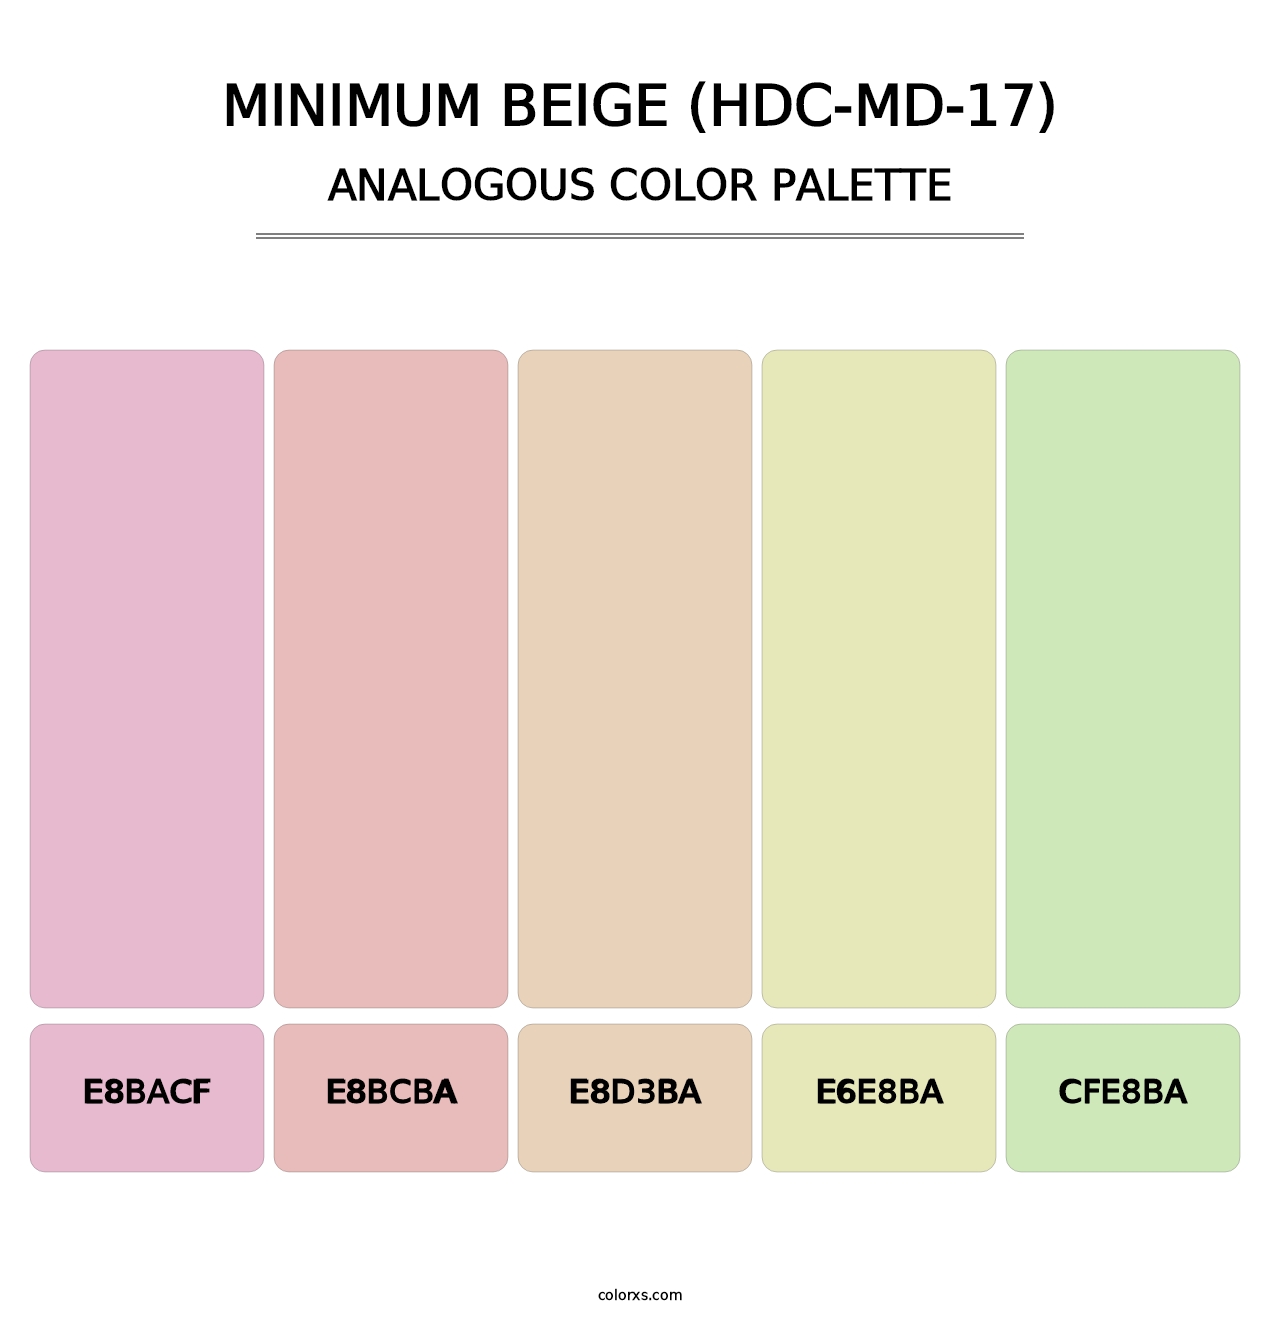 Minimum Beige (HDC-MD-17) - Analogous Color Palette